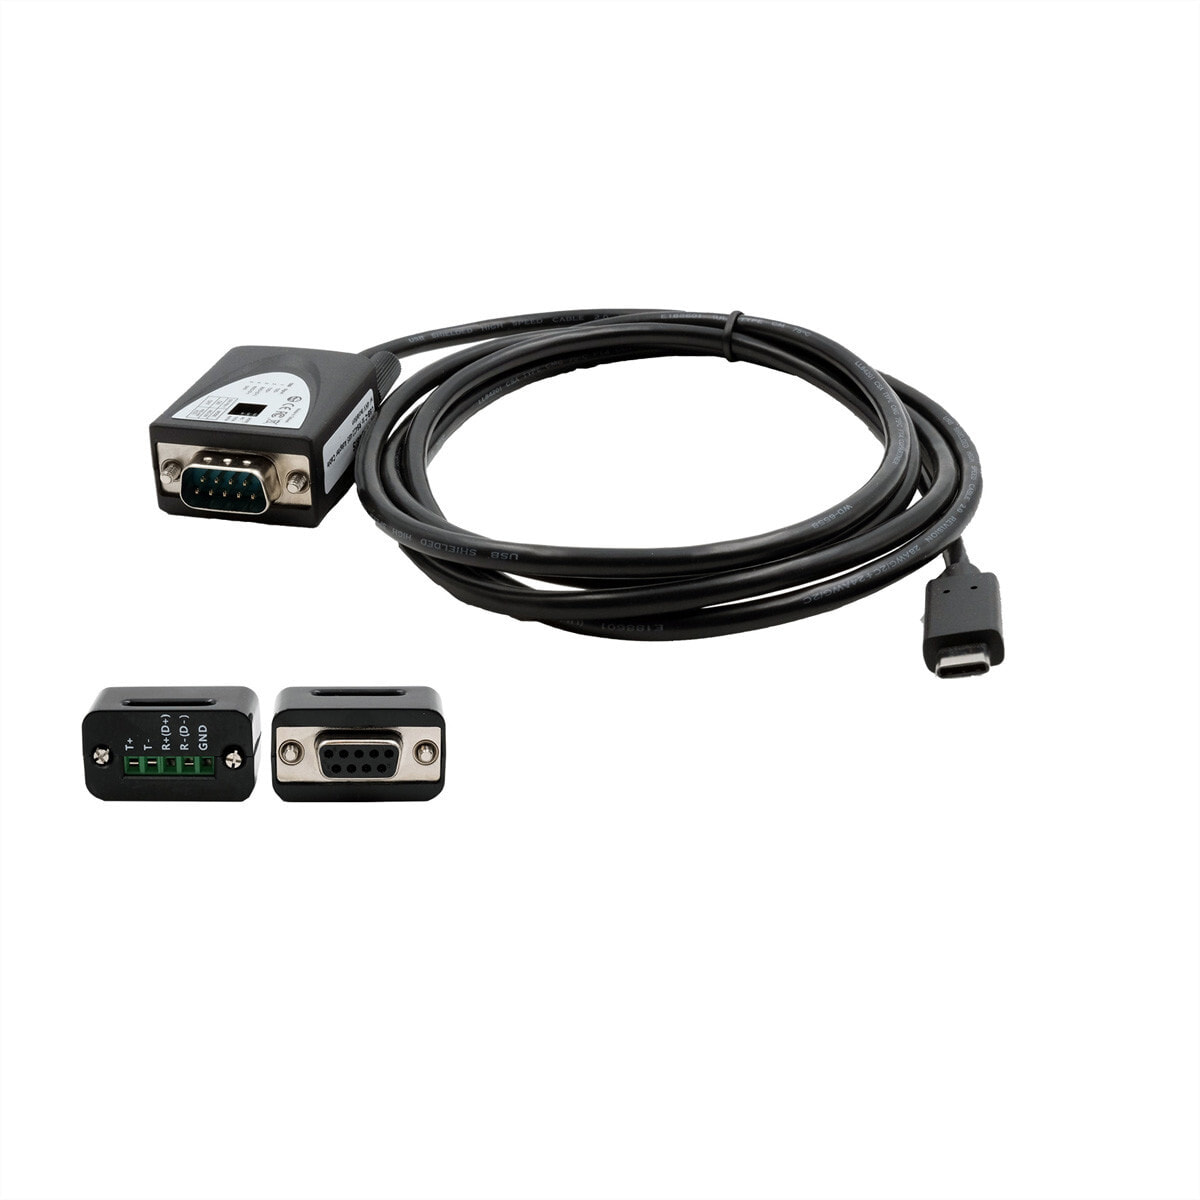 Exsys USB 2.0 C zu Serielle 1S RS-422/485 1.8m mit 15KVÜberspannungsschutz - Cable - Digital